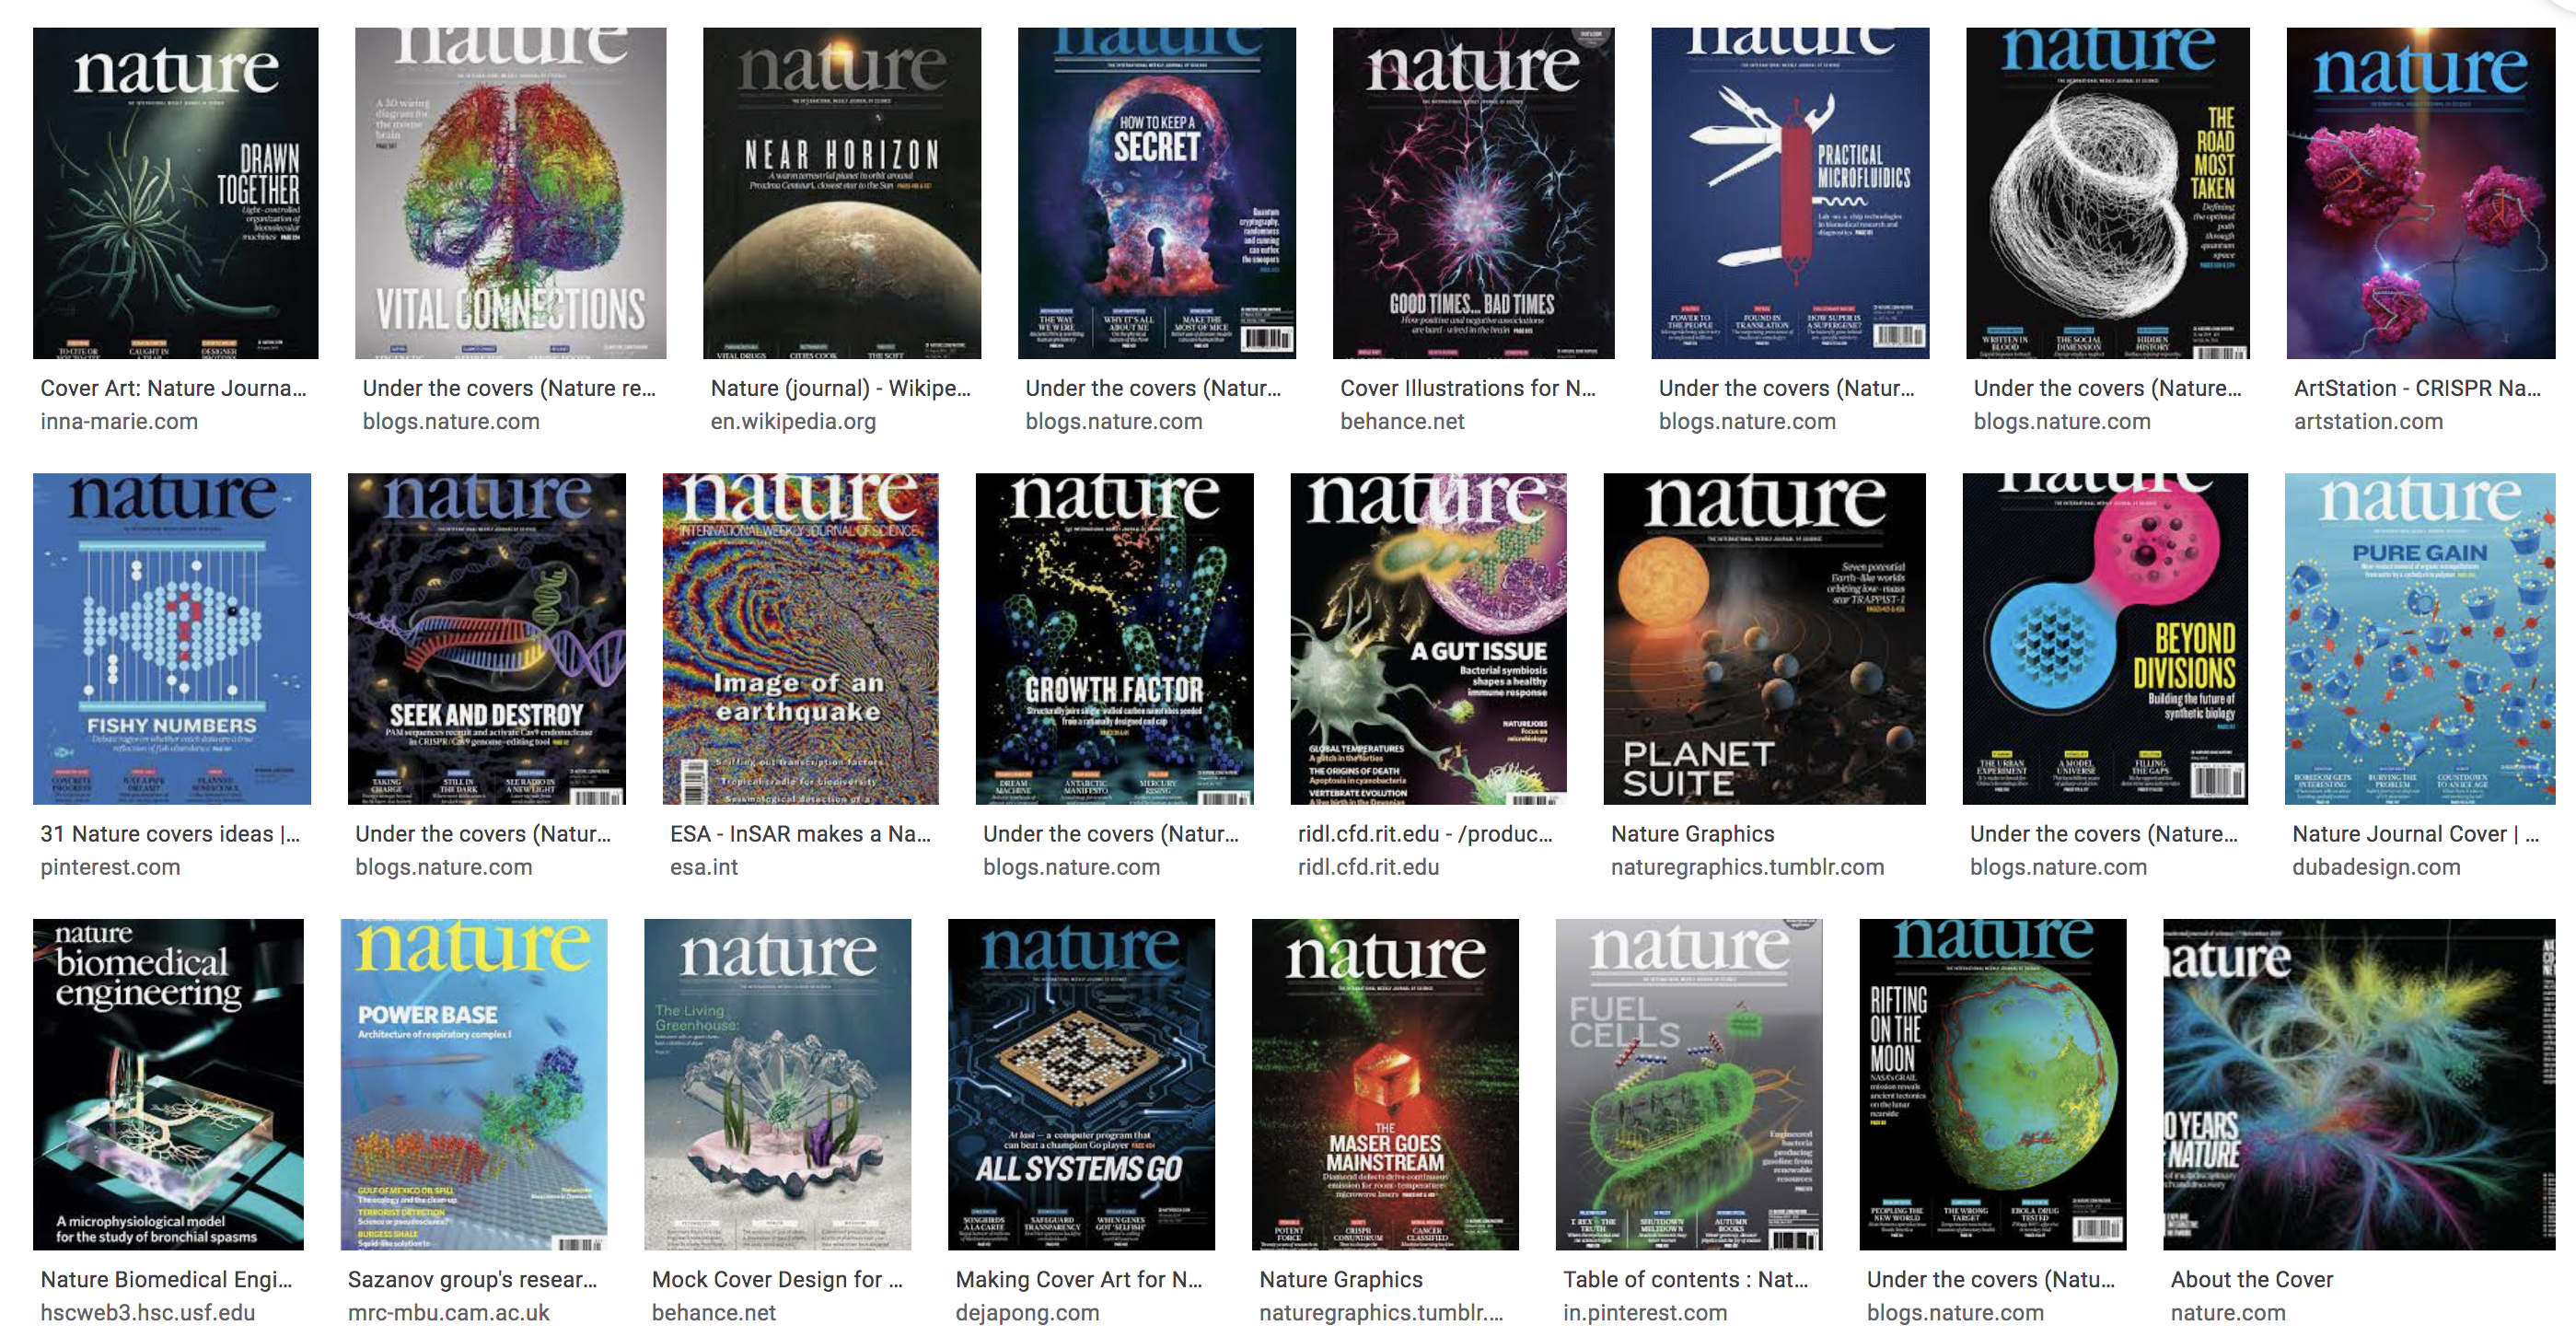 经验分享丨如何用6天时间登上《nature》杂志封面? 